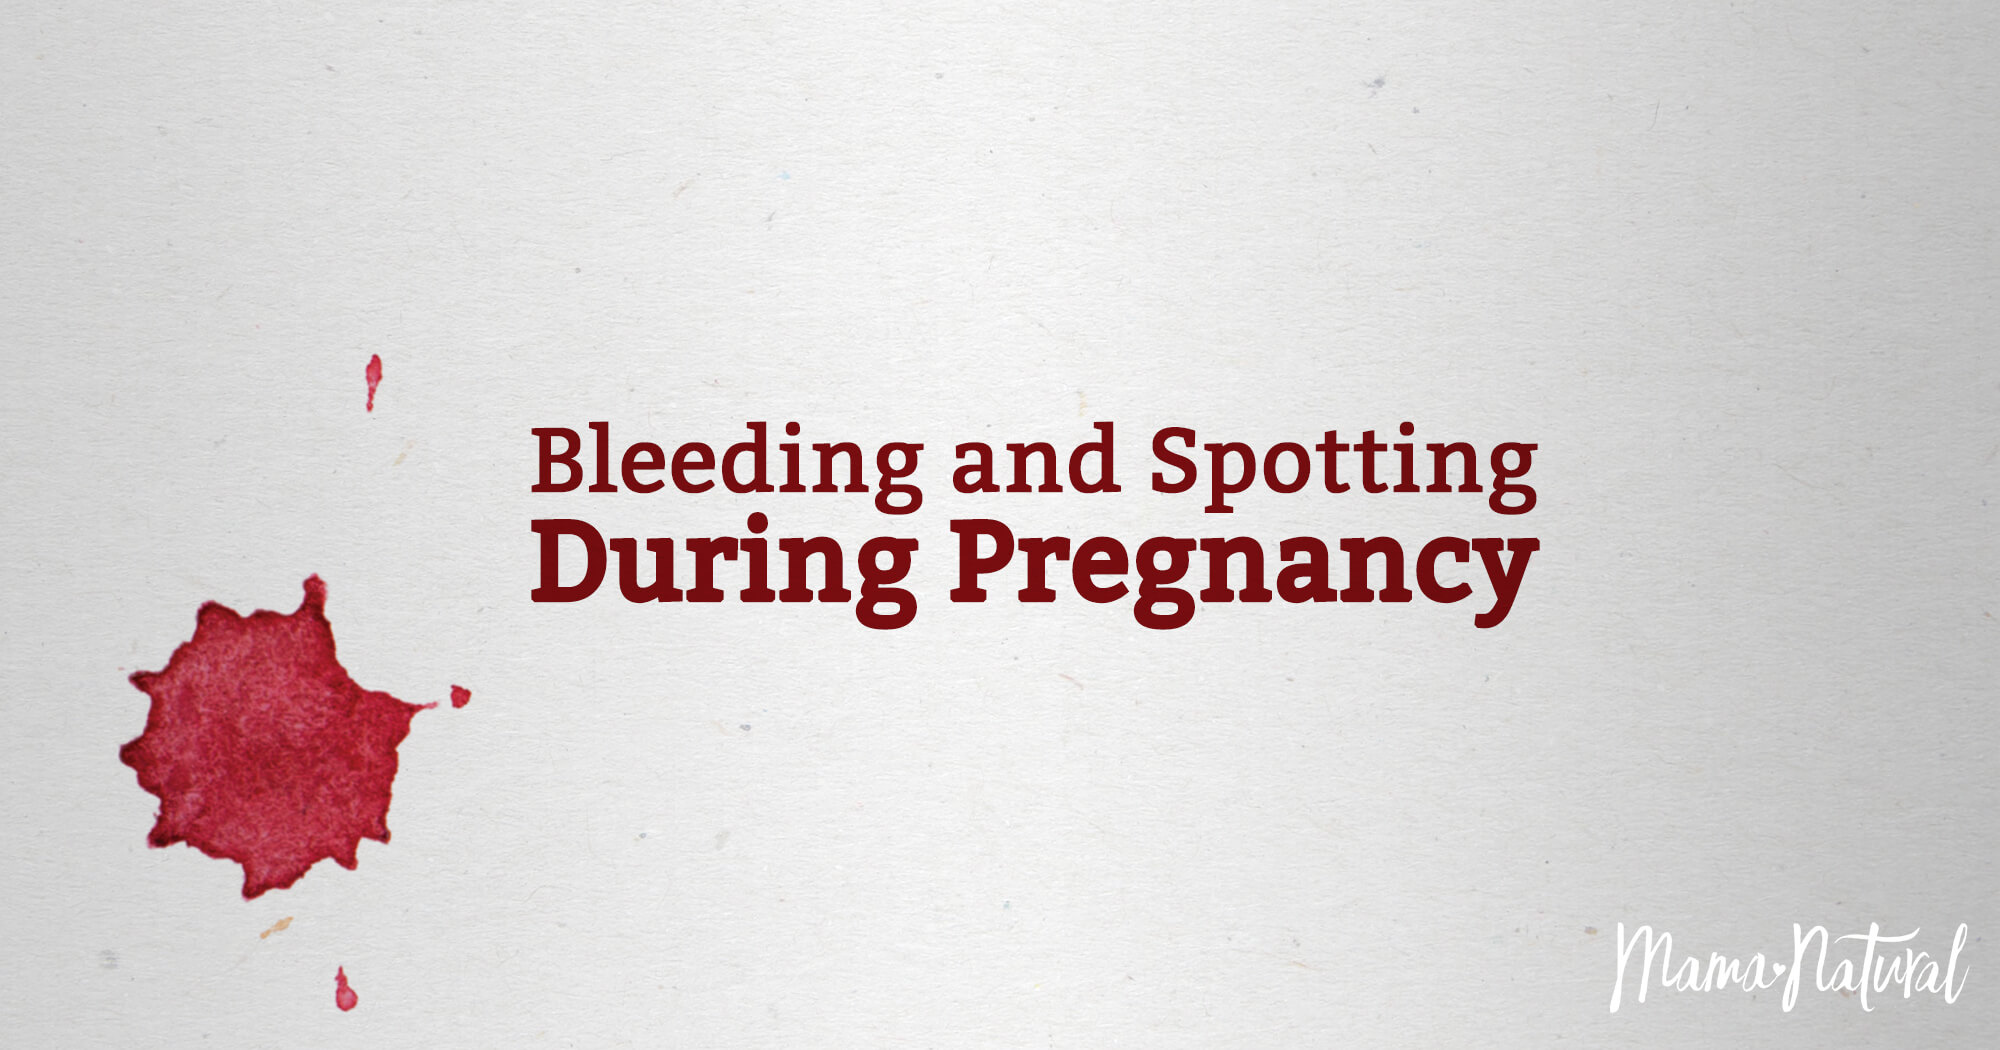 10 Weeks Pregnant And Bleeding When I Wipe